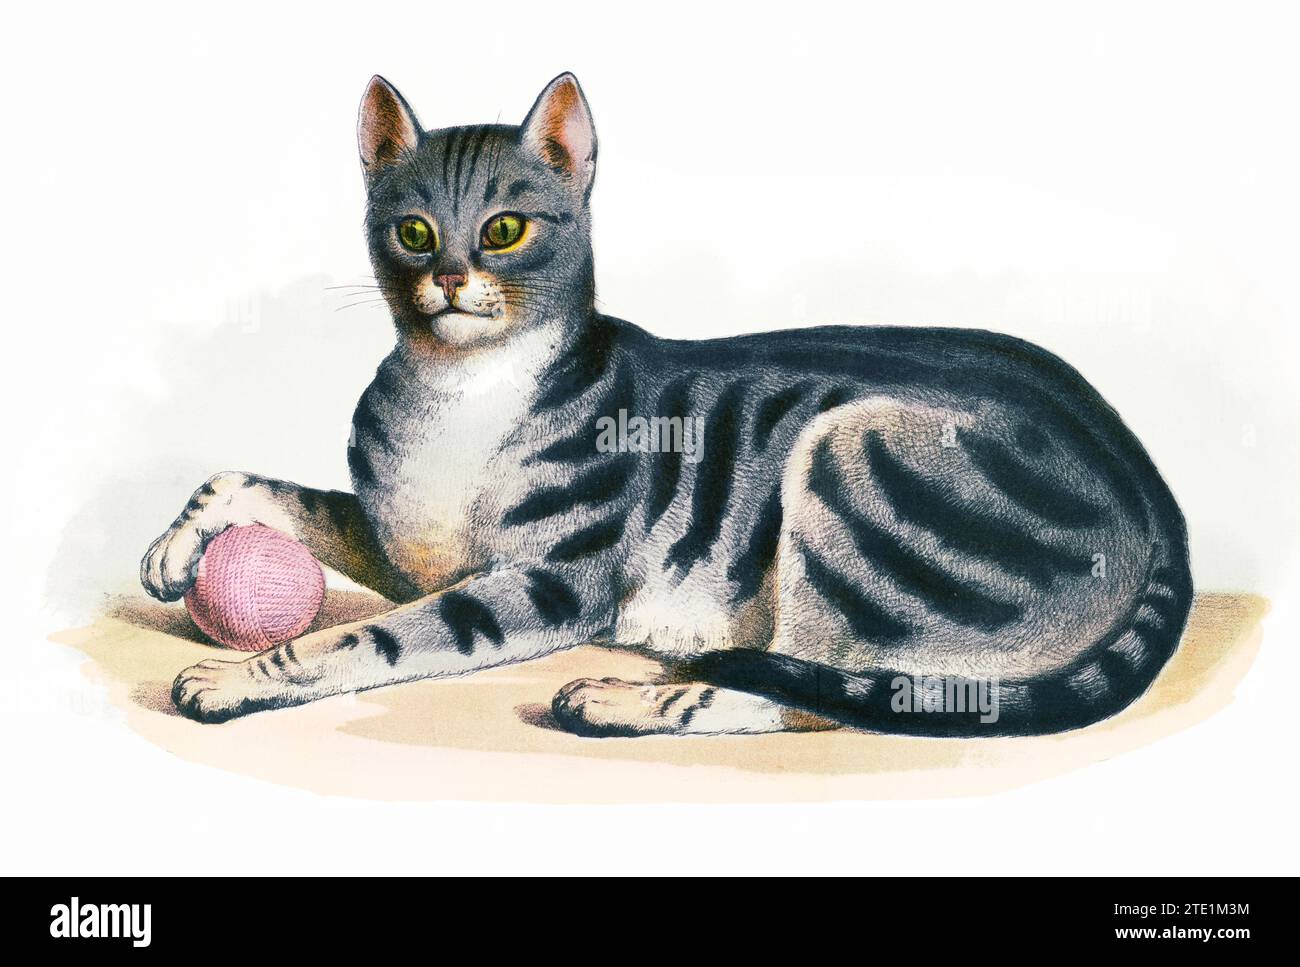 1870er Jahre Tierillustration - die Katze, Felis domesticus. Der Druck zeigt eine linke Seitenansicht einer Hauskatze in voller Länge, liegend, nach vorne gerichtet, mit einer Pfote auf einem Garnknäuel - isoliert auf weißem Hintergrund. Stockfoto